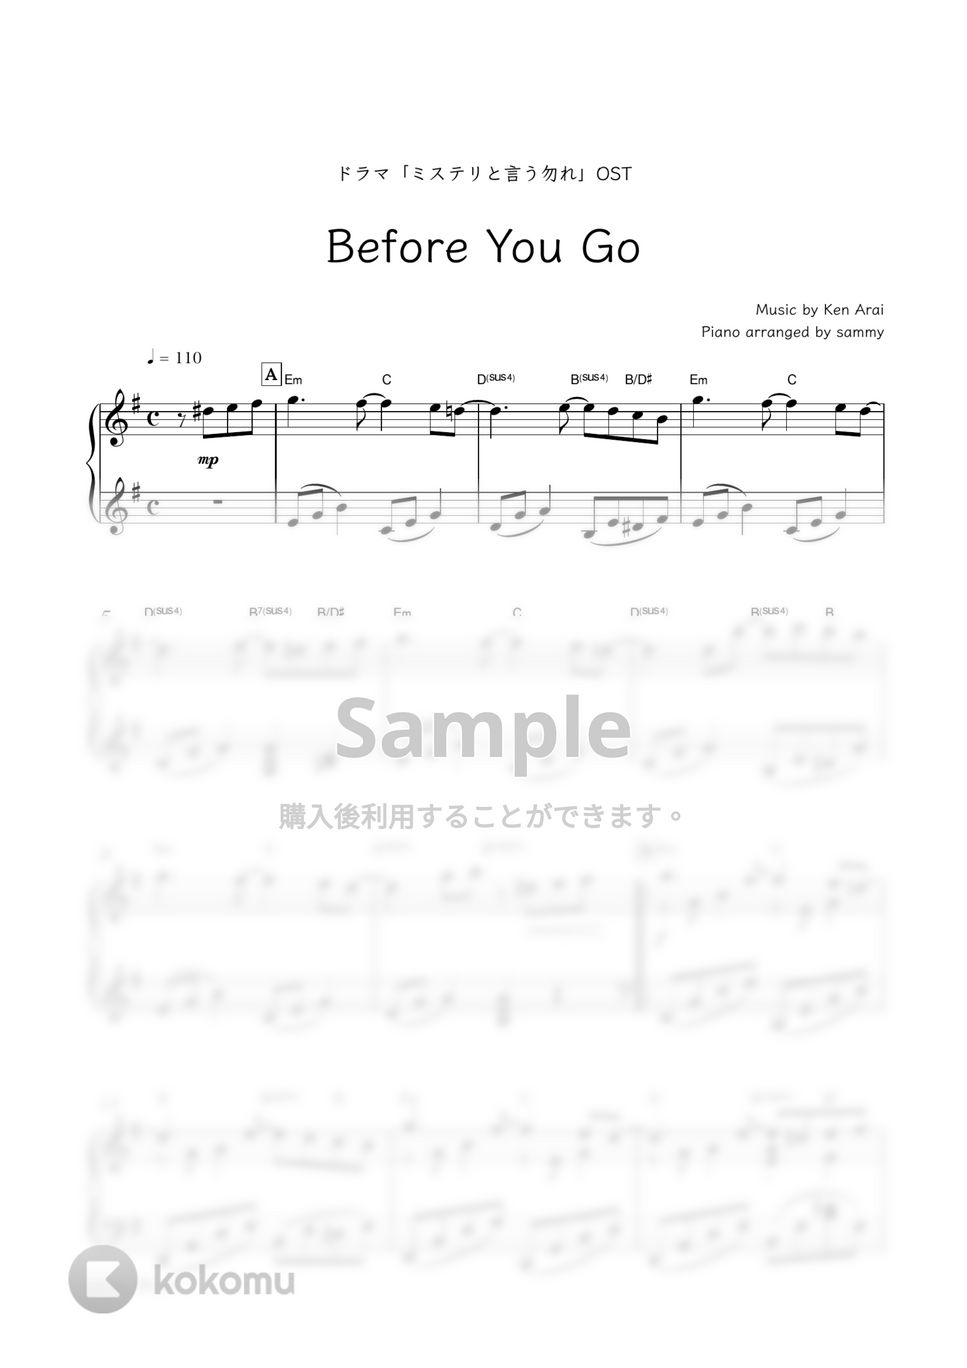 ドラマ『ミステリと言う勿れ』OST - Before You Go by sammy